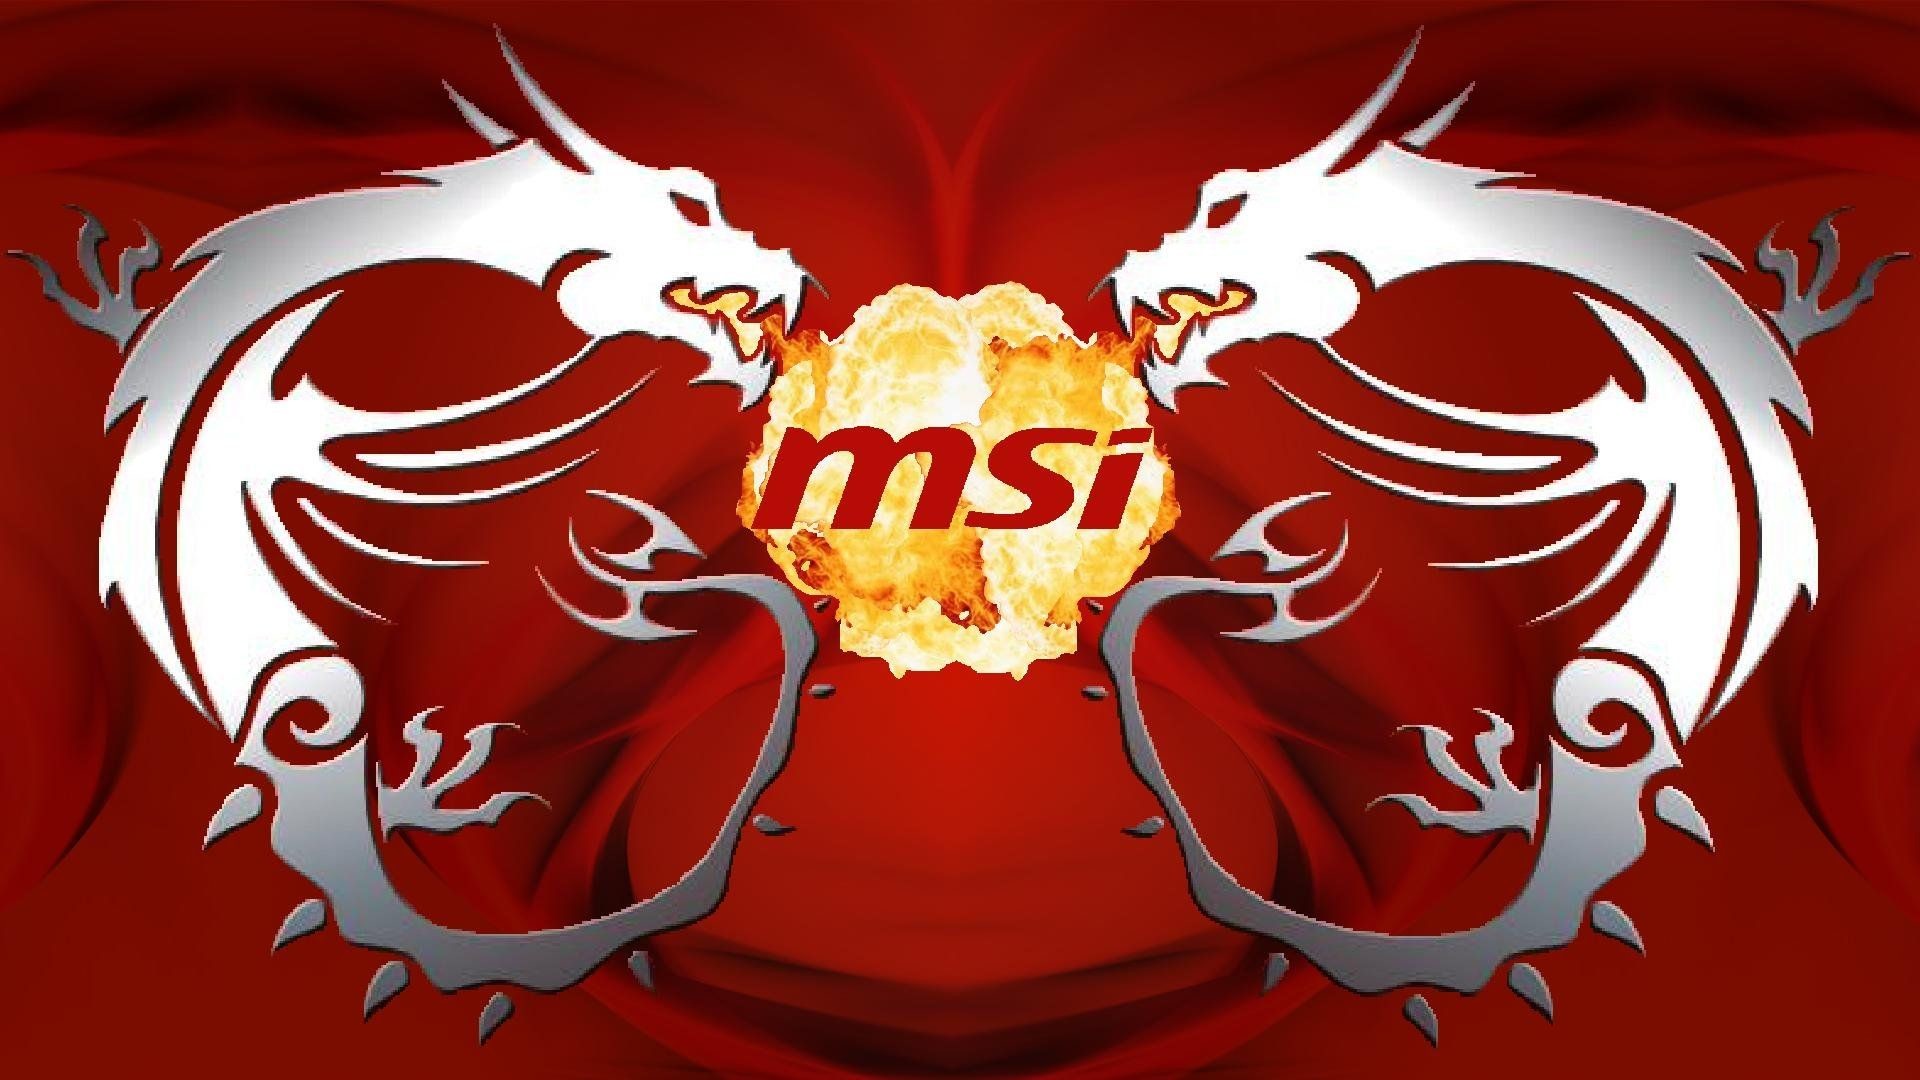 Wallpapersafari - Msi Gaming Logo Png - 1920x1080 Wallpaper 